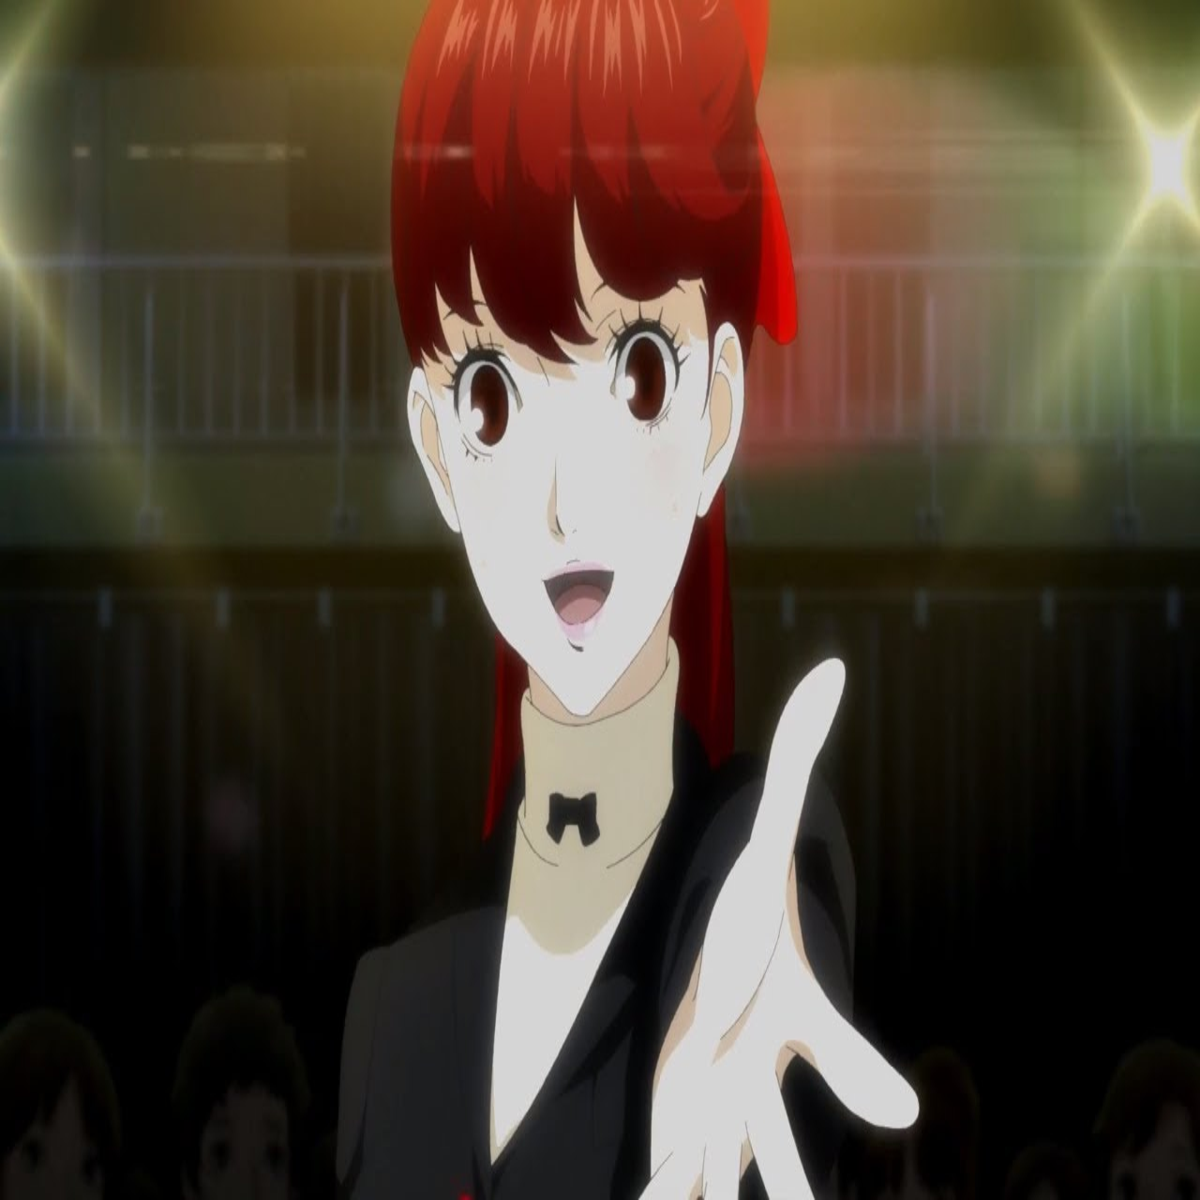 Persona 5 Royal Confidant Guide: Devil - Ichiko Ohya